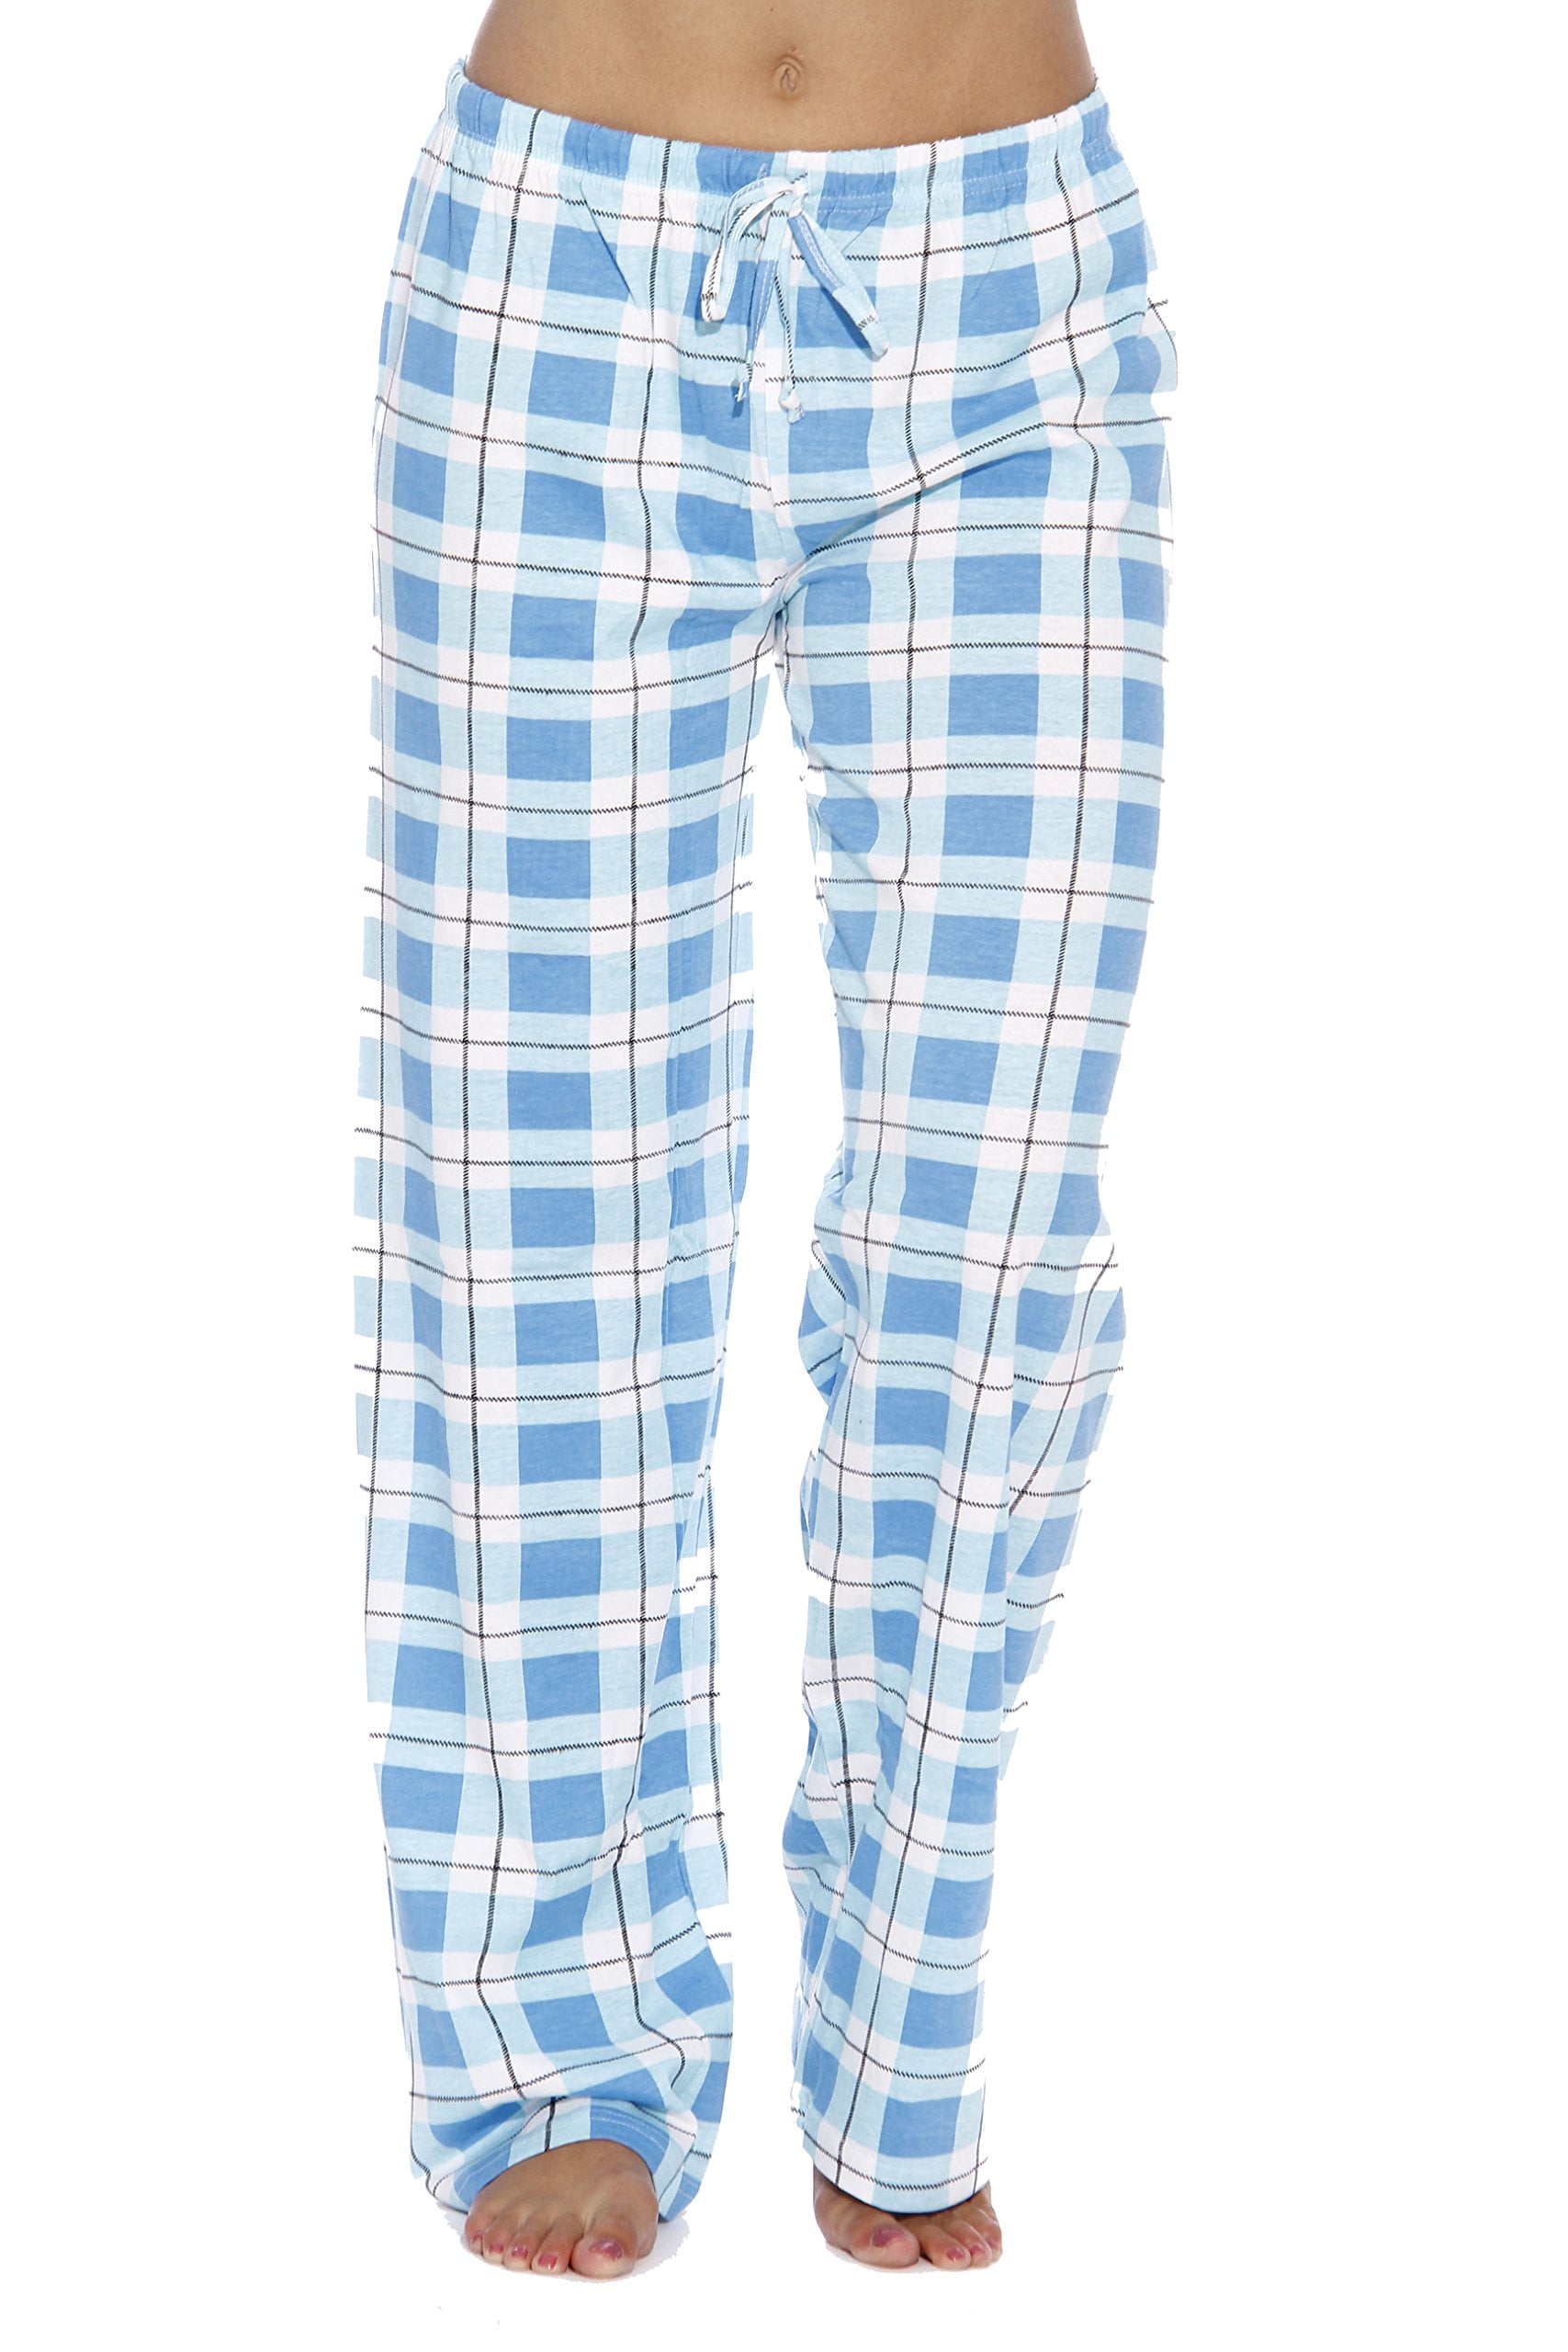 Sleepwear Small, Blue Ladies 100% Cotton Plaid Pajamas